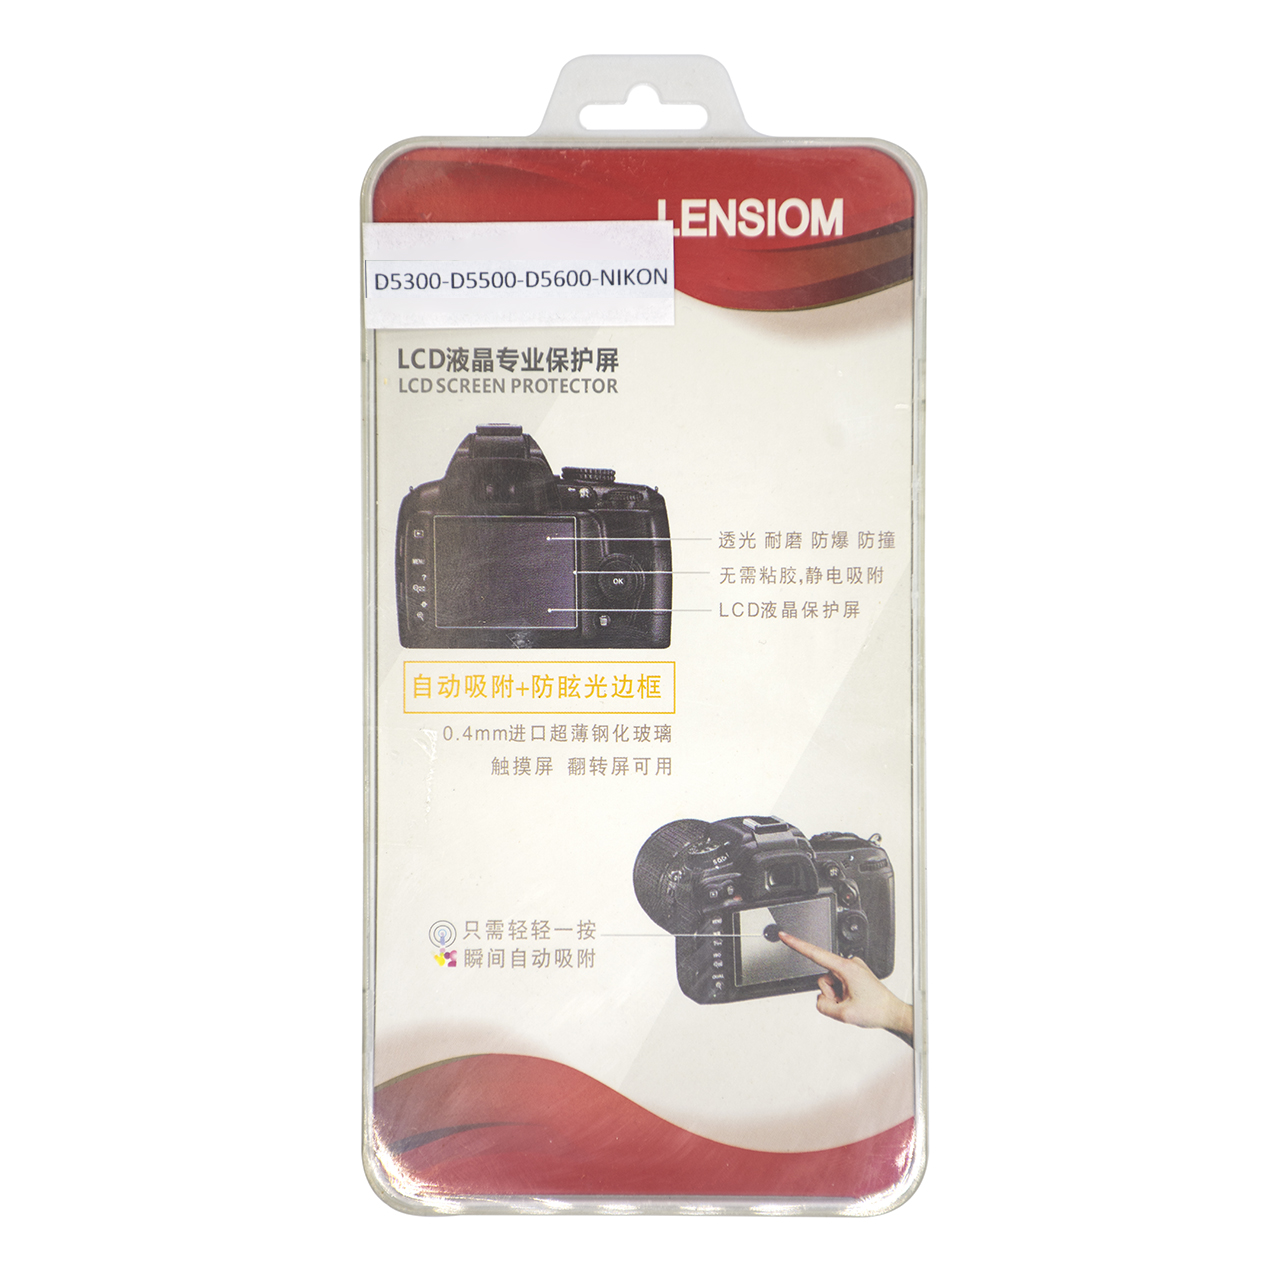 محافظ صفحه نمایش دوربین لنزیوم مدل LD5300 مناسب برای نیکون D5300-D5500-D5600